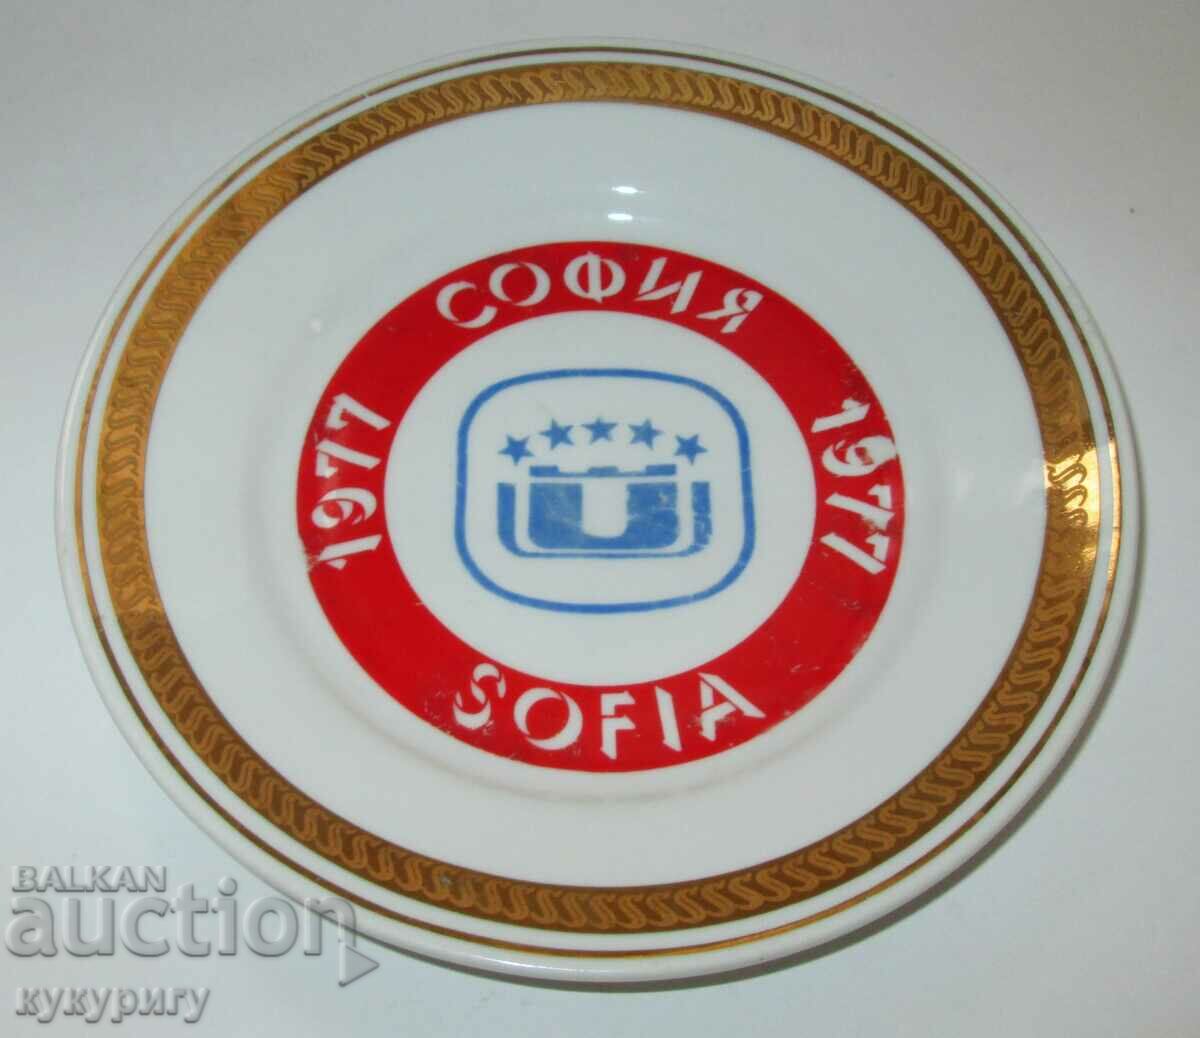 Farfurie veche de portelan de la Universiada Sofia 1977.